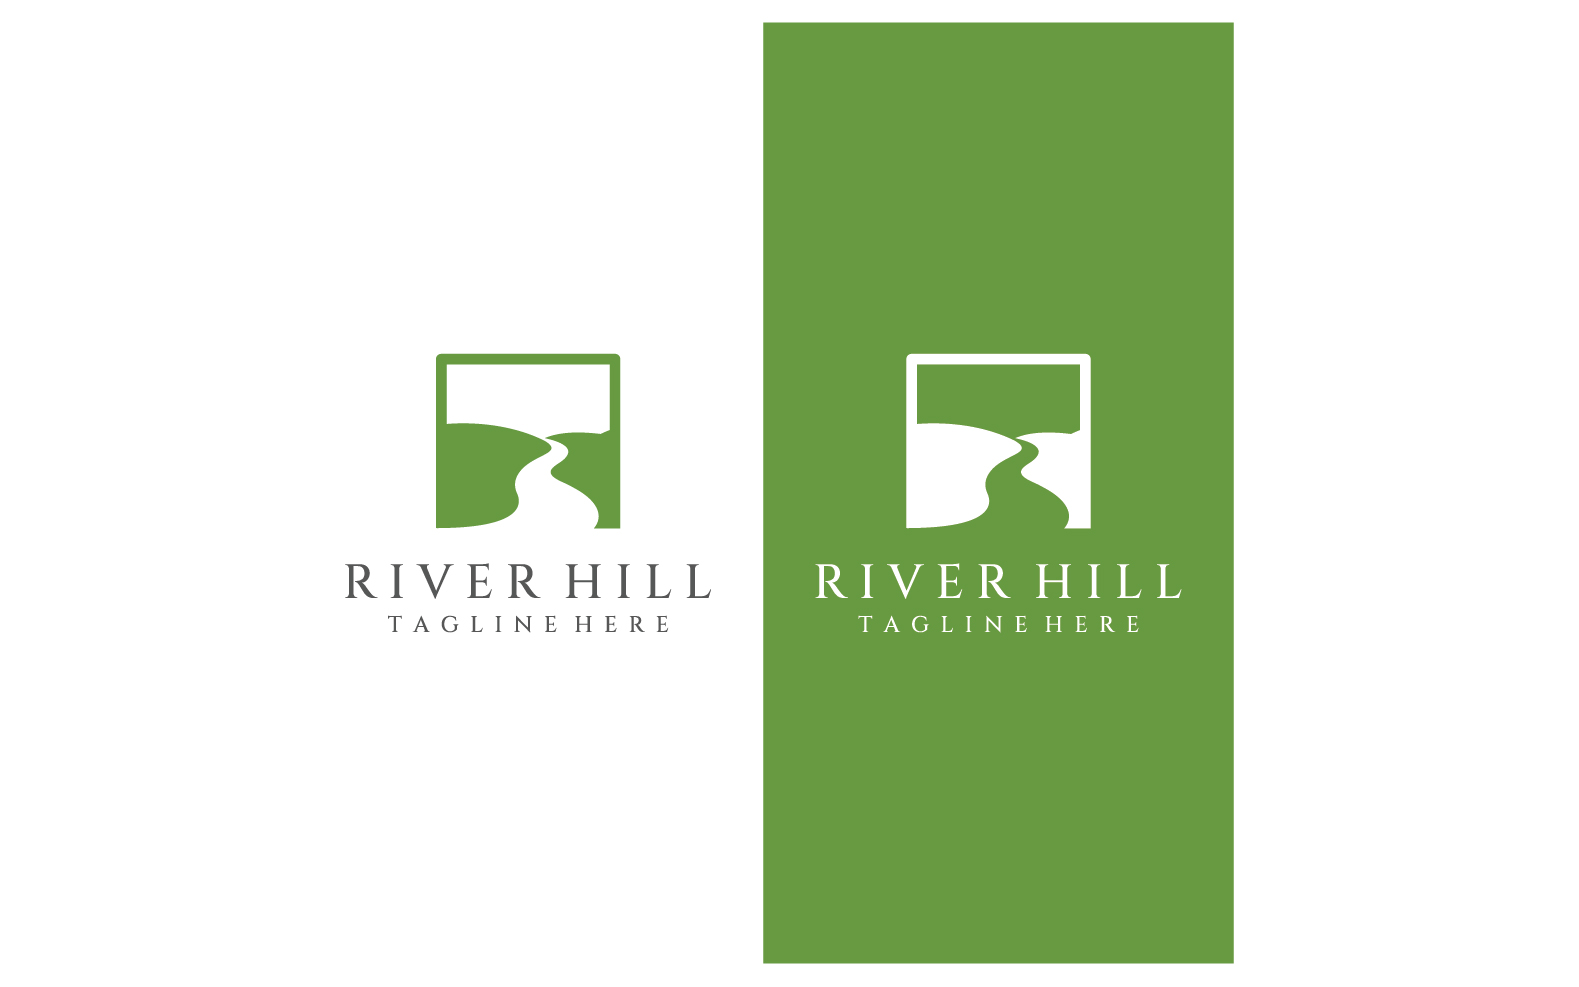 River nature logo and symbol vcetor 2